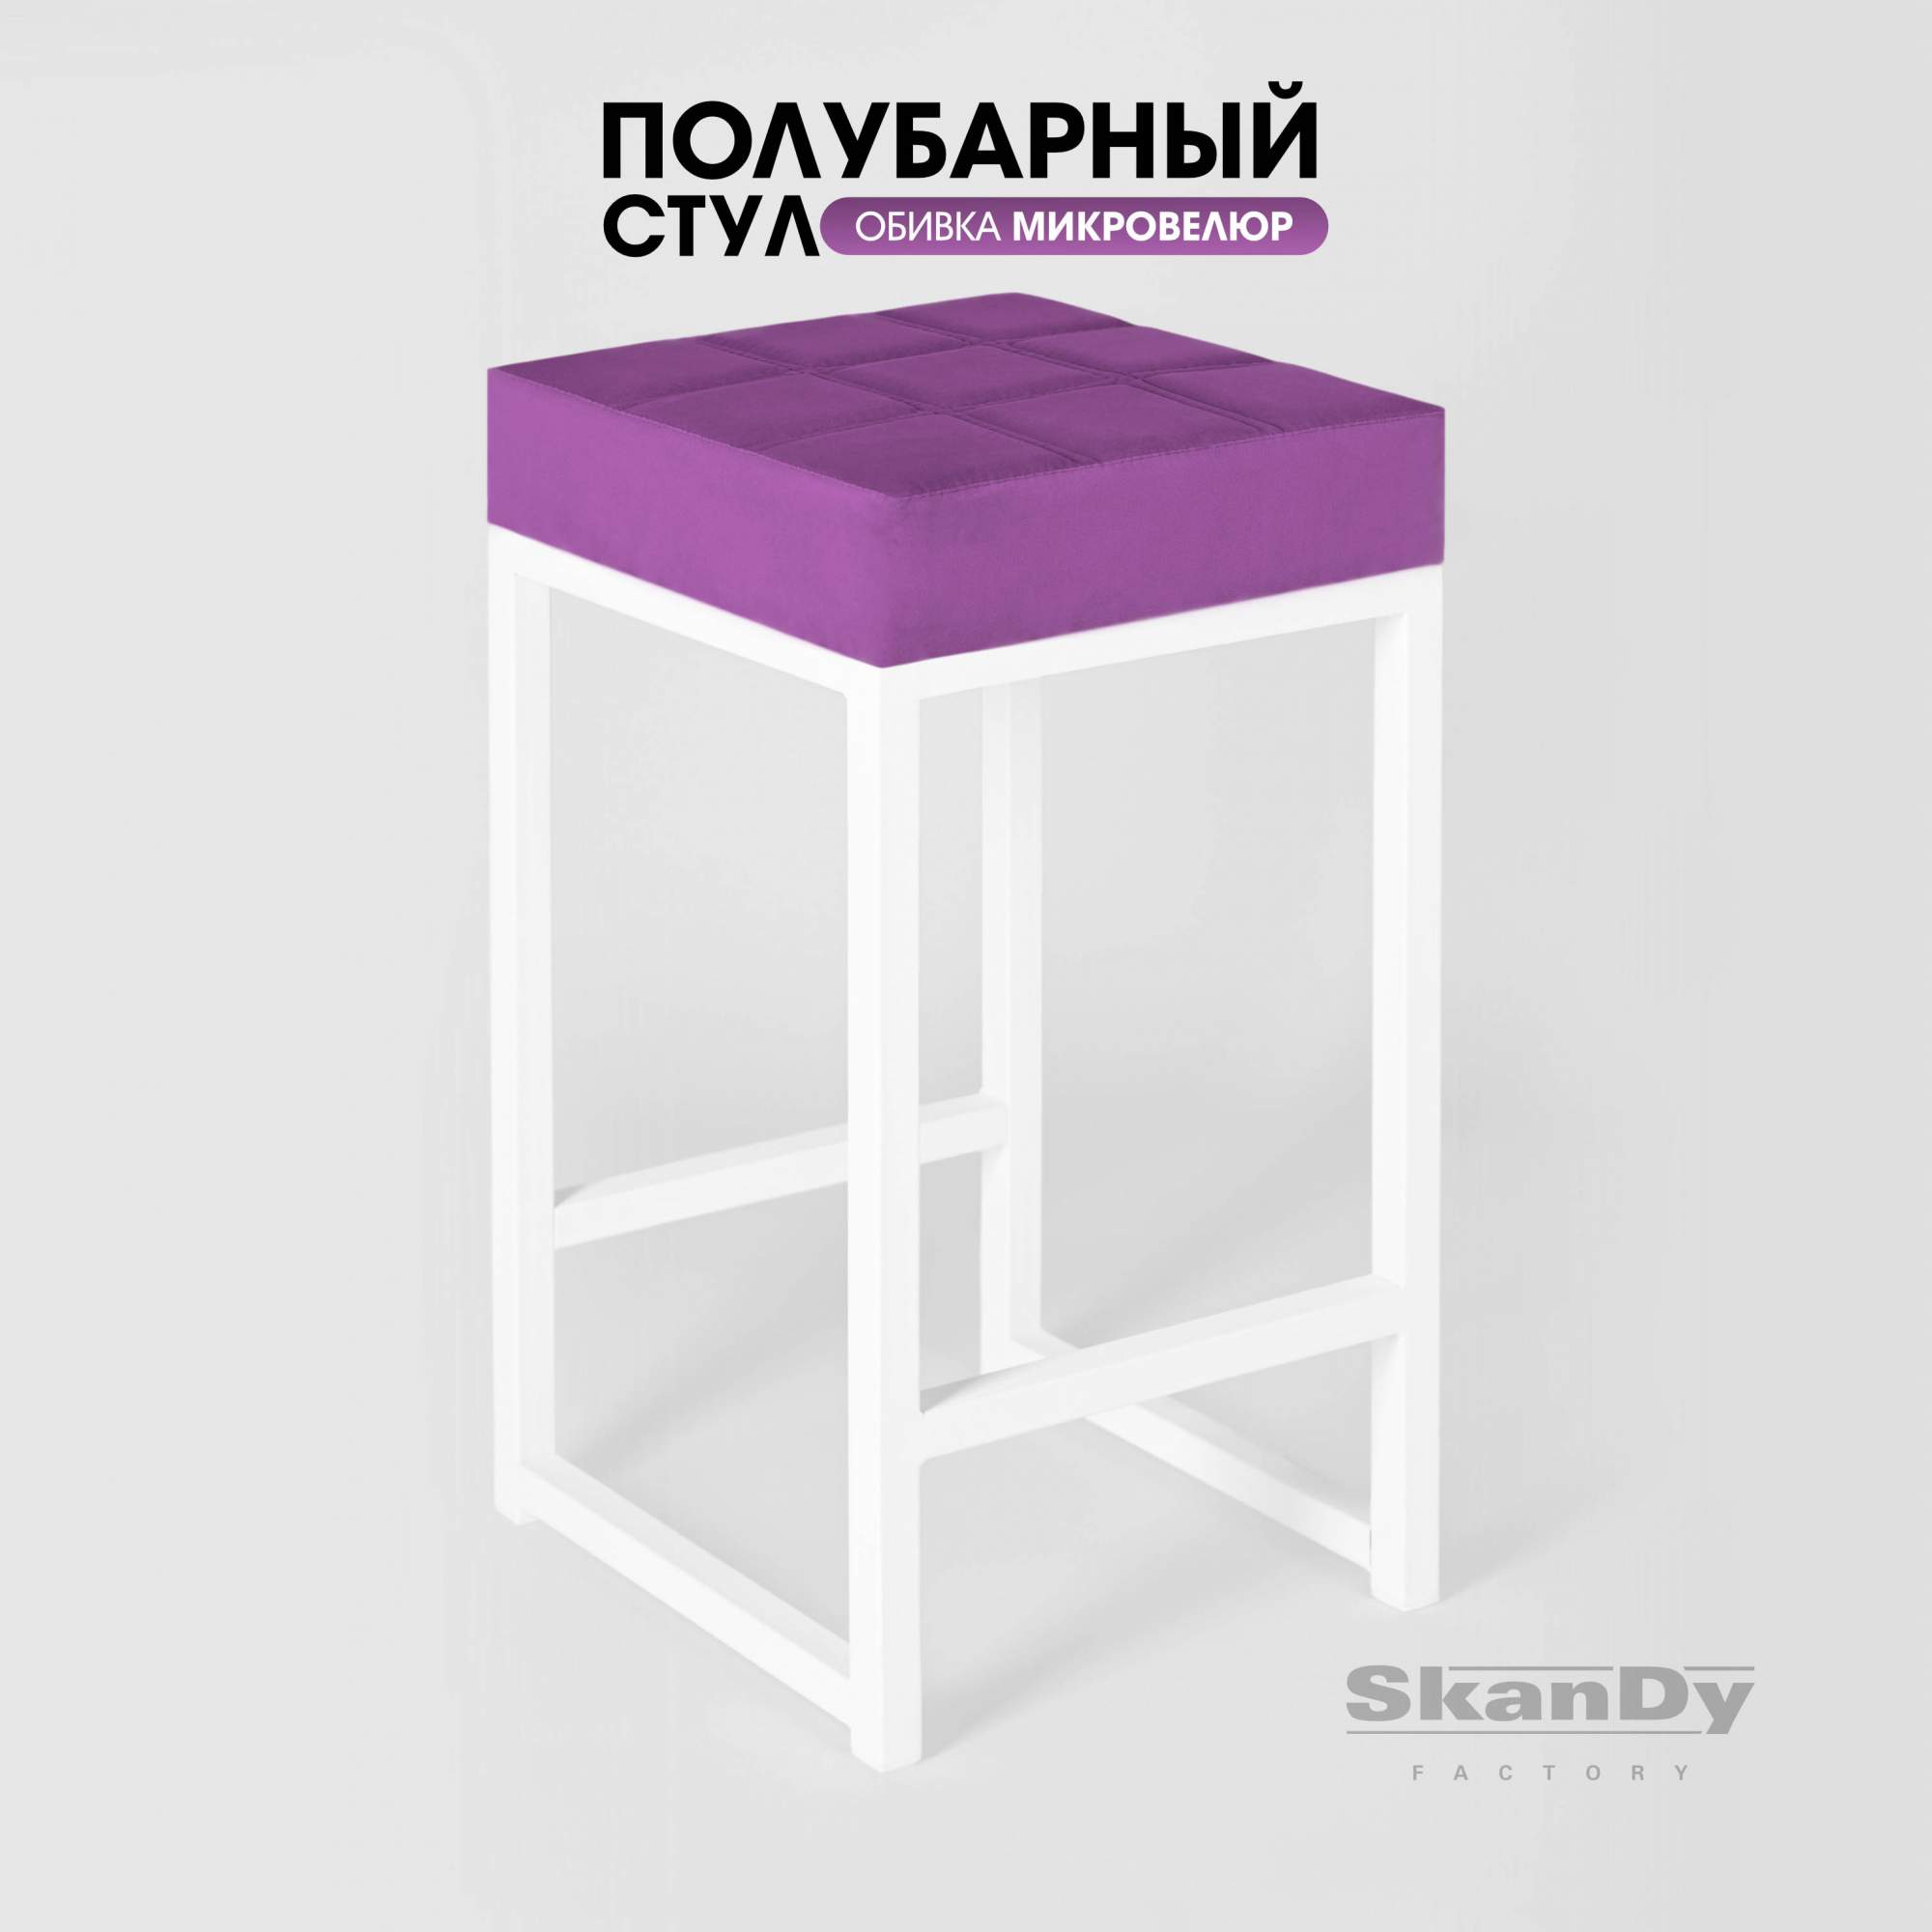 Полубарный стул для кухни SkanDy Factory, 66 см, фиолетовый